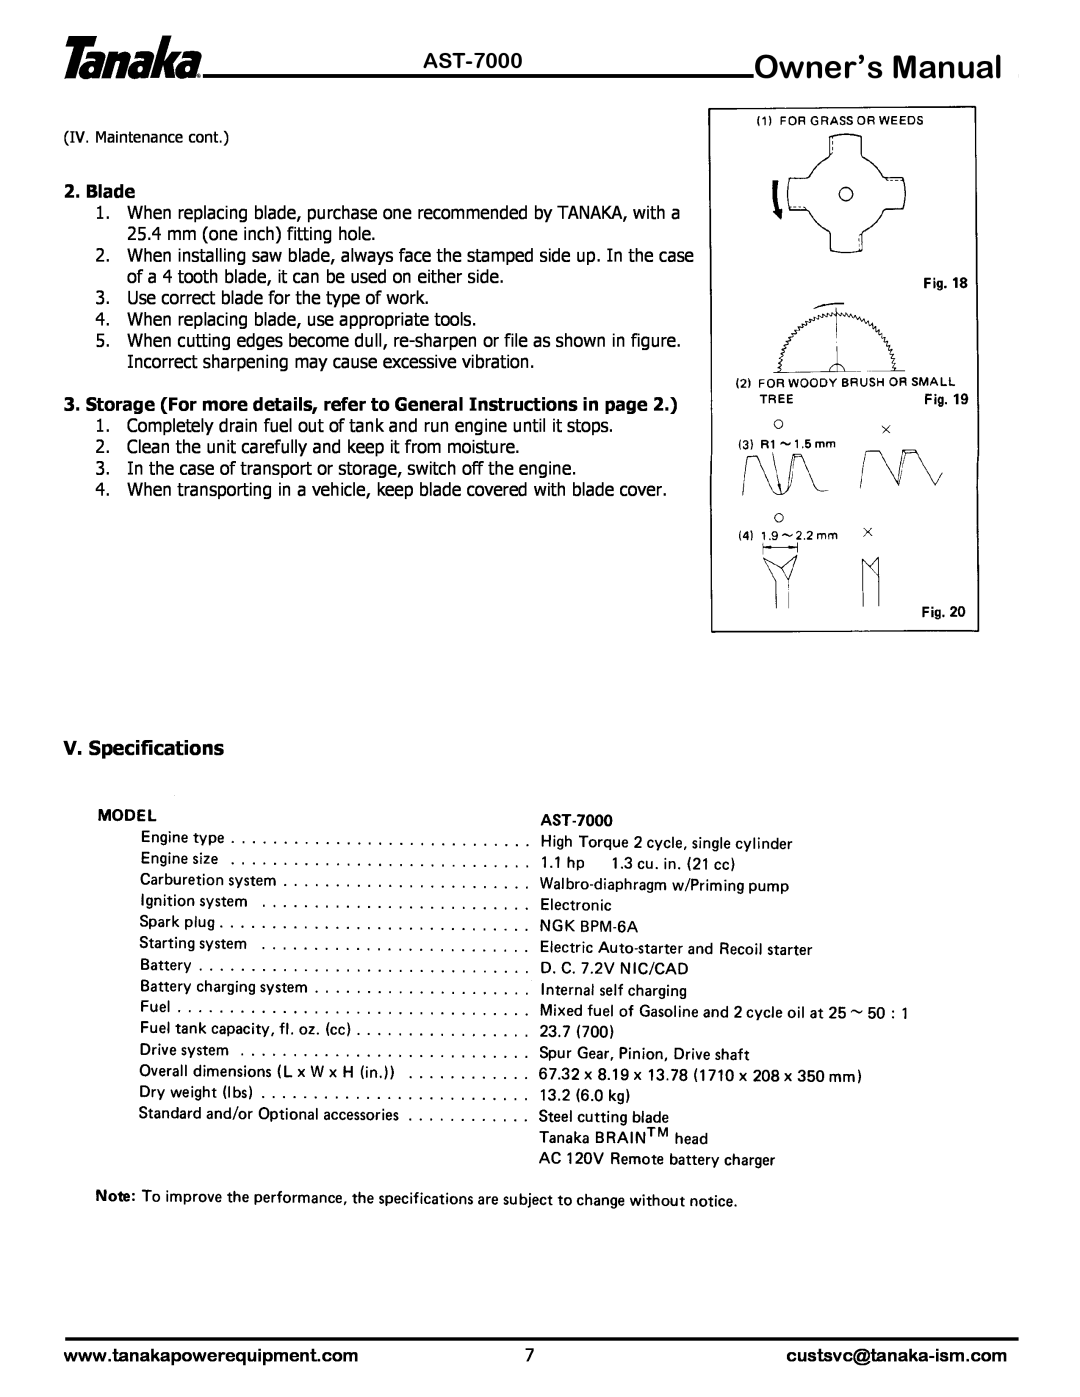 Tanaka AST-7000 manual V. Specifications, custsvc@tanaka-ism.com 